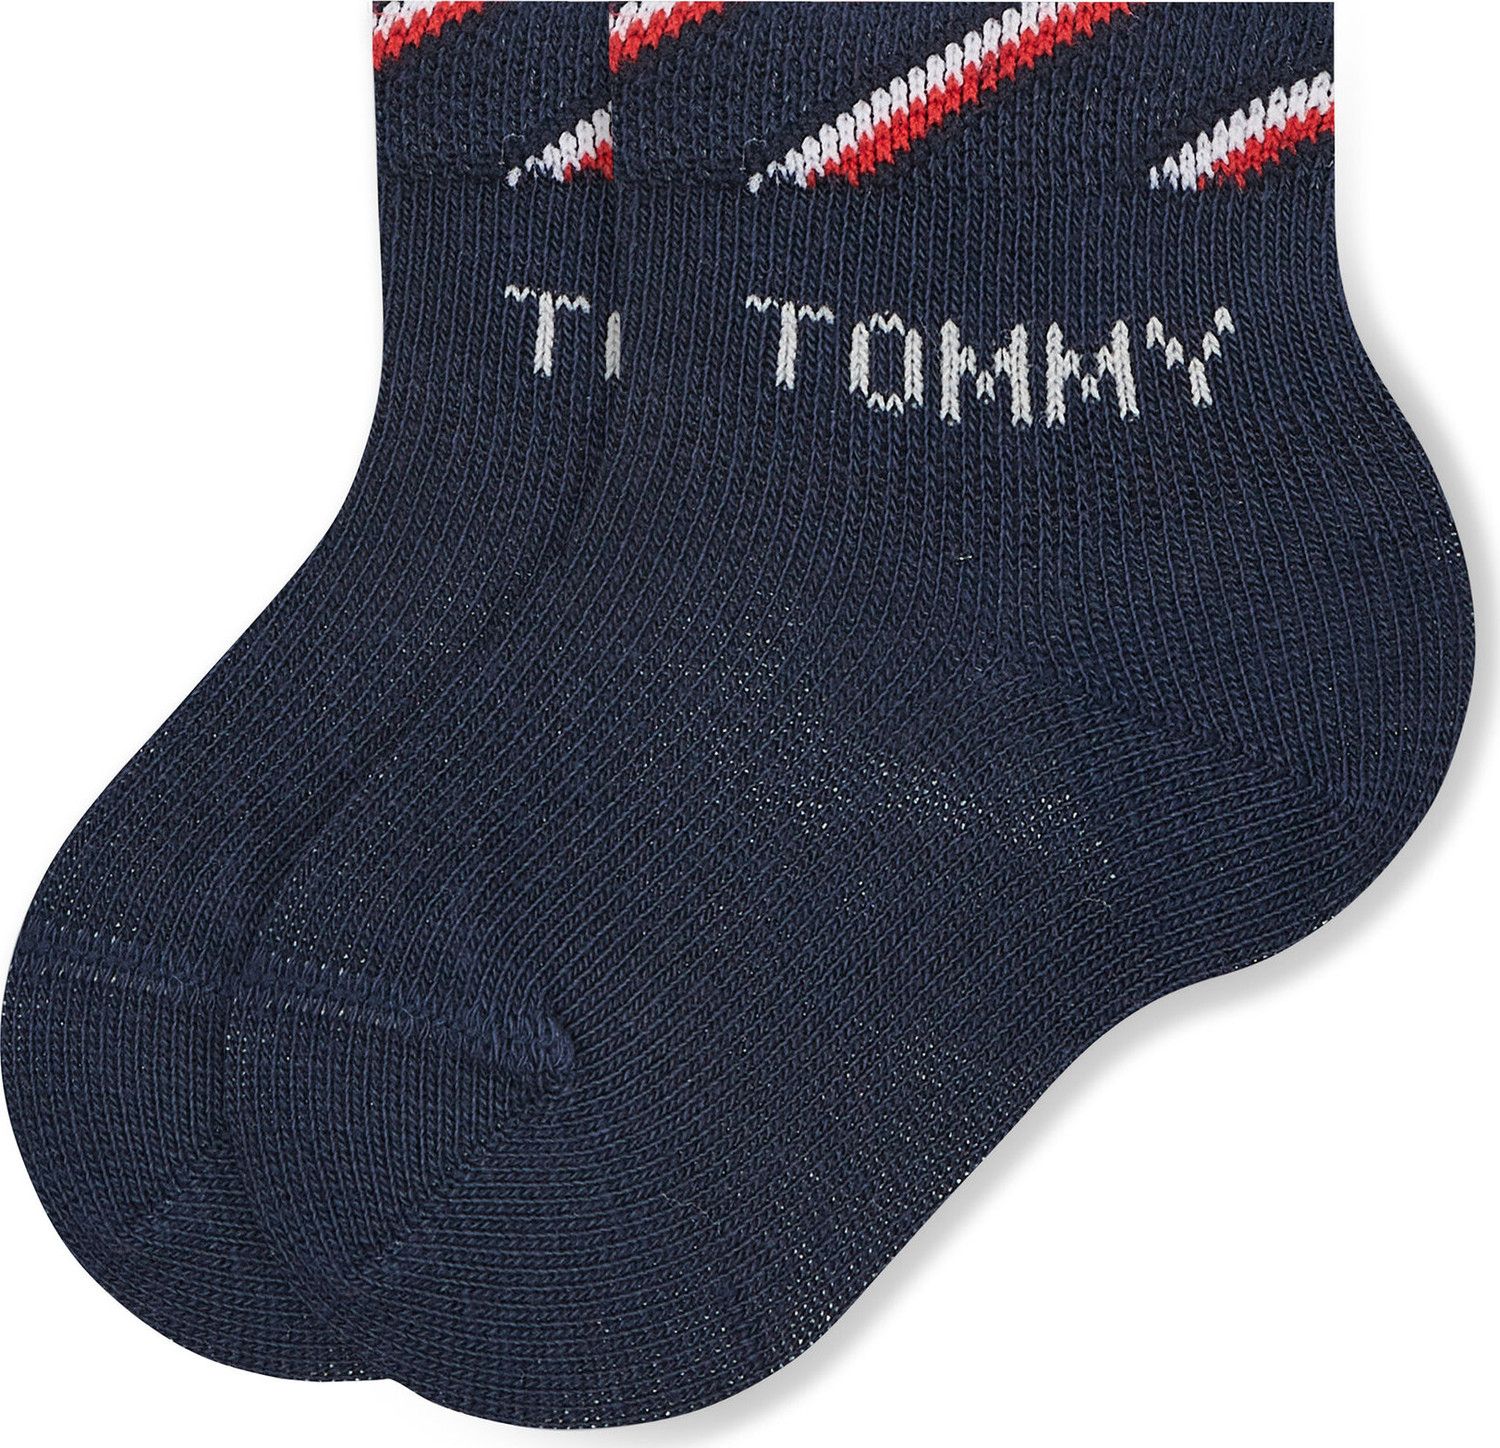 Sada 3 párů dětských vysokých ponožek Tommy Hilfiger 701220277 Original